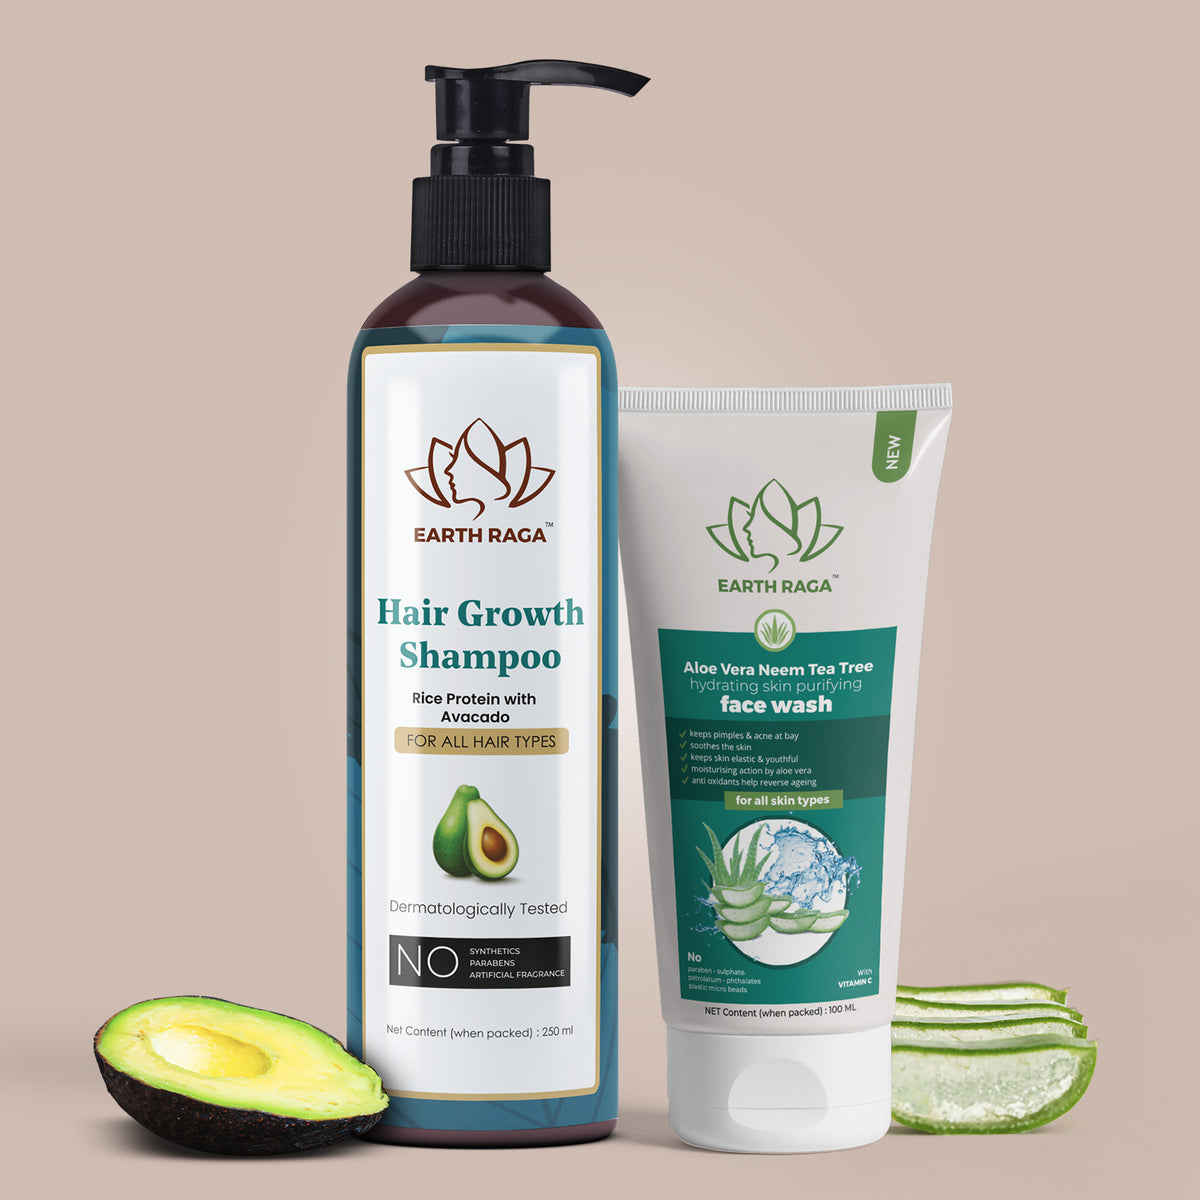 Hair Growth Shampoo and Aloe Vera Neem Tea Tree Face Wash Combo